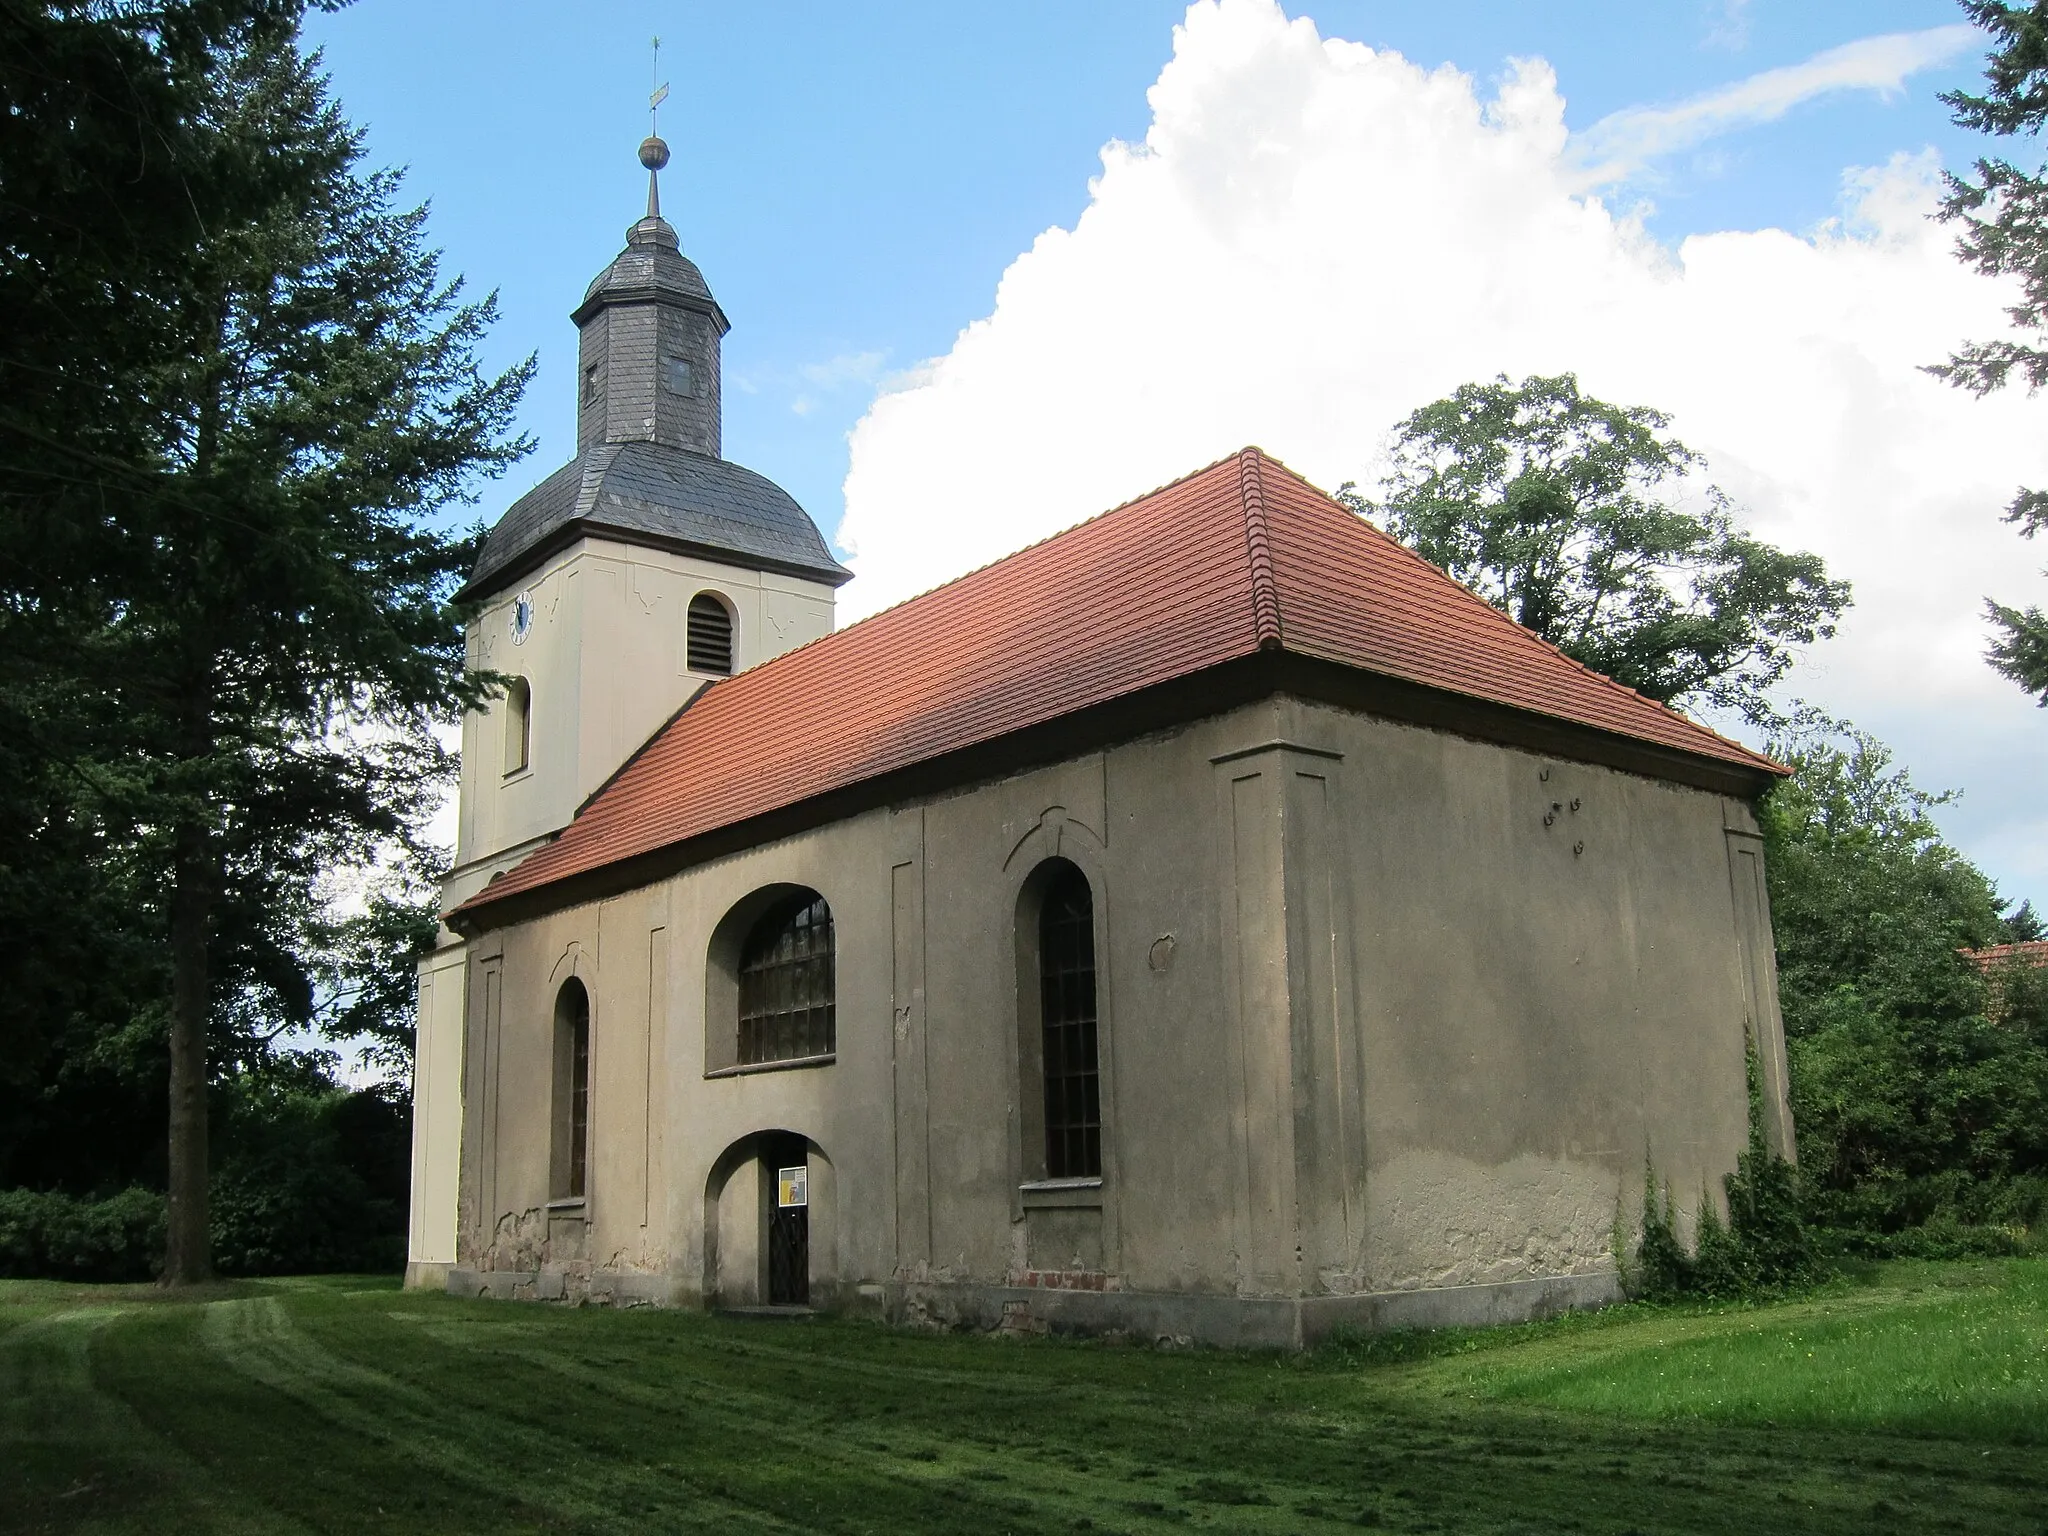 Photo showing: Barockkirche an der Wansdorfer Dorfstraße erbaut 1793 in der Liste der Baudenkmale in Schönwalde-Glien unter Nr. 22 registriert.